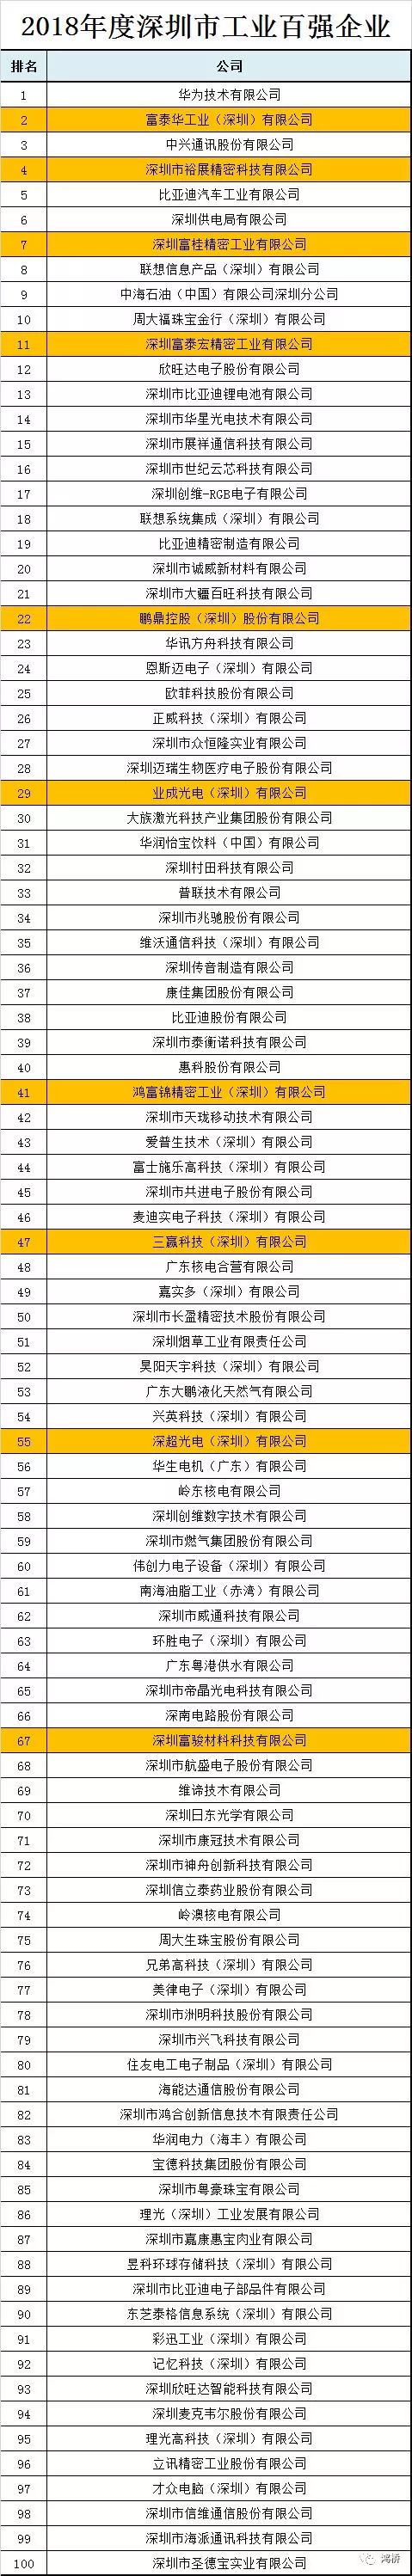 关注 | 2018年深圳市工业百强企业名单出炉，富士康10家公司上榜！